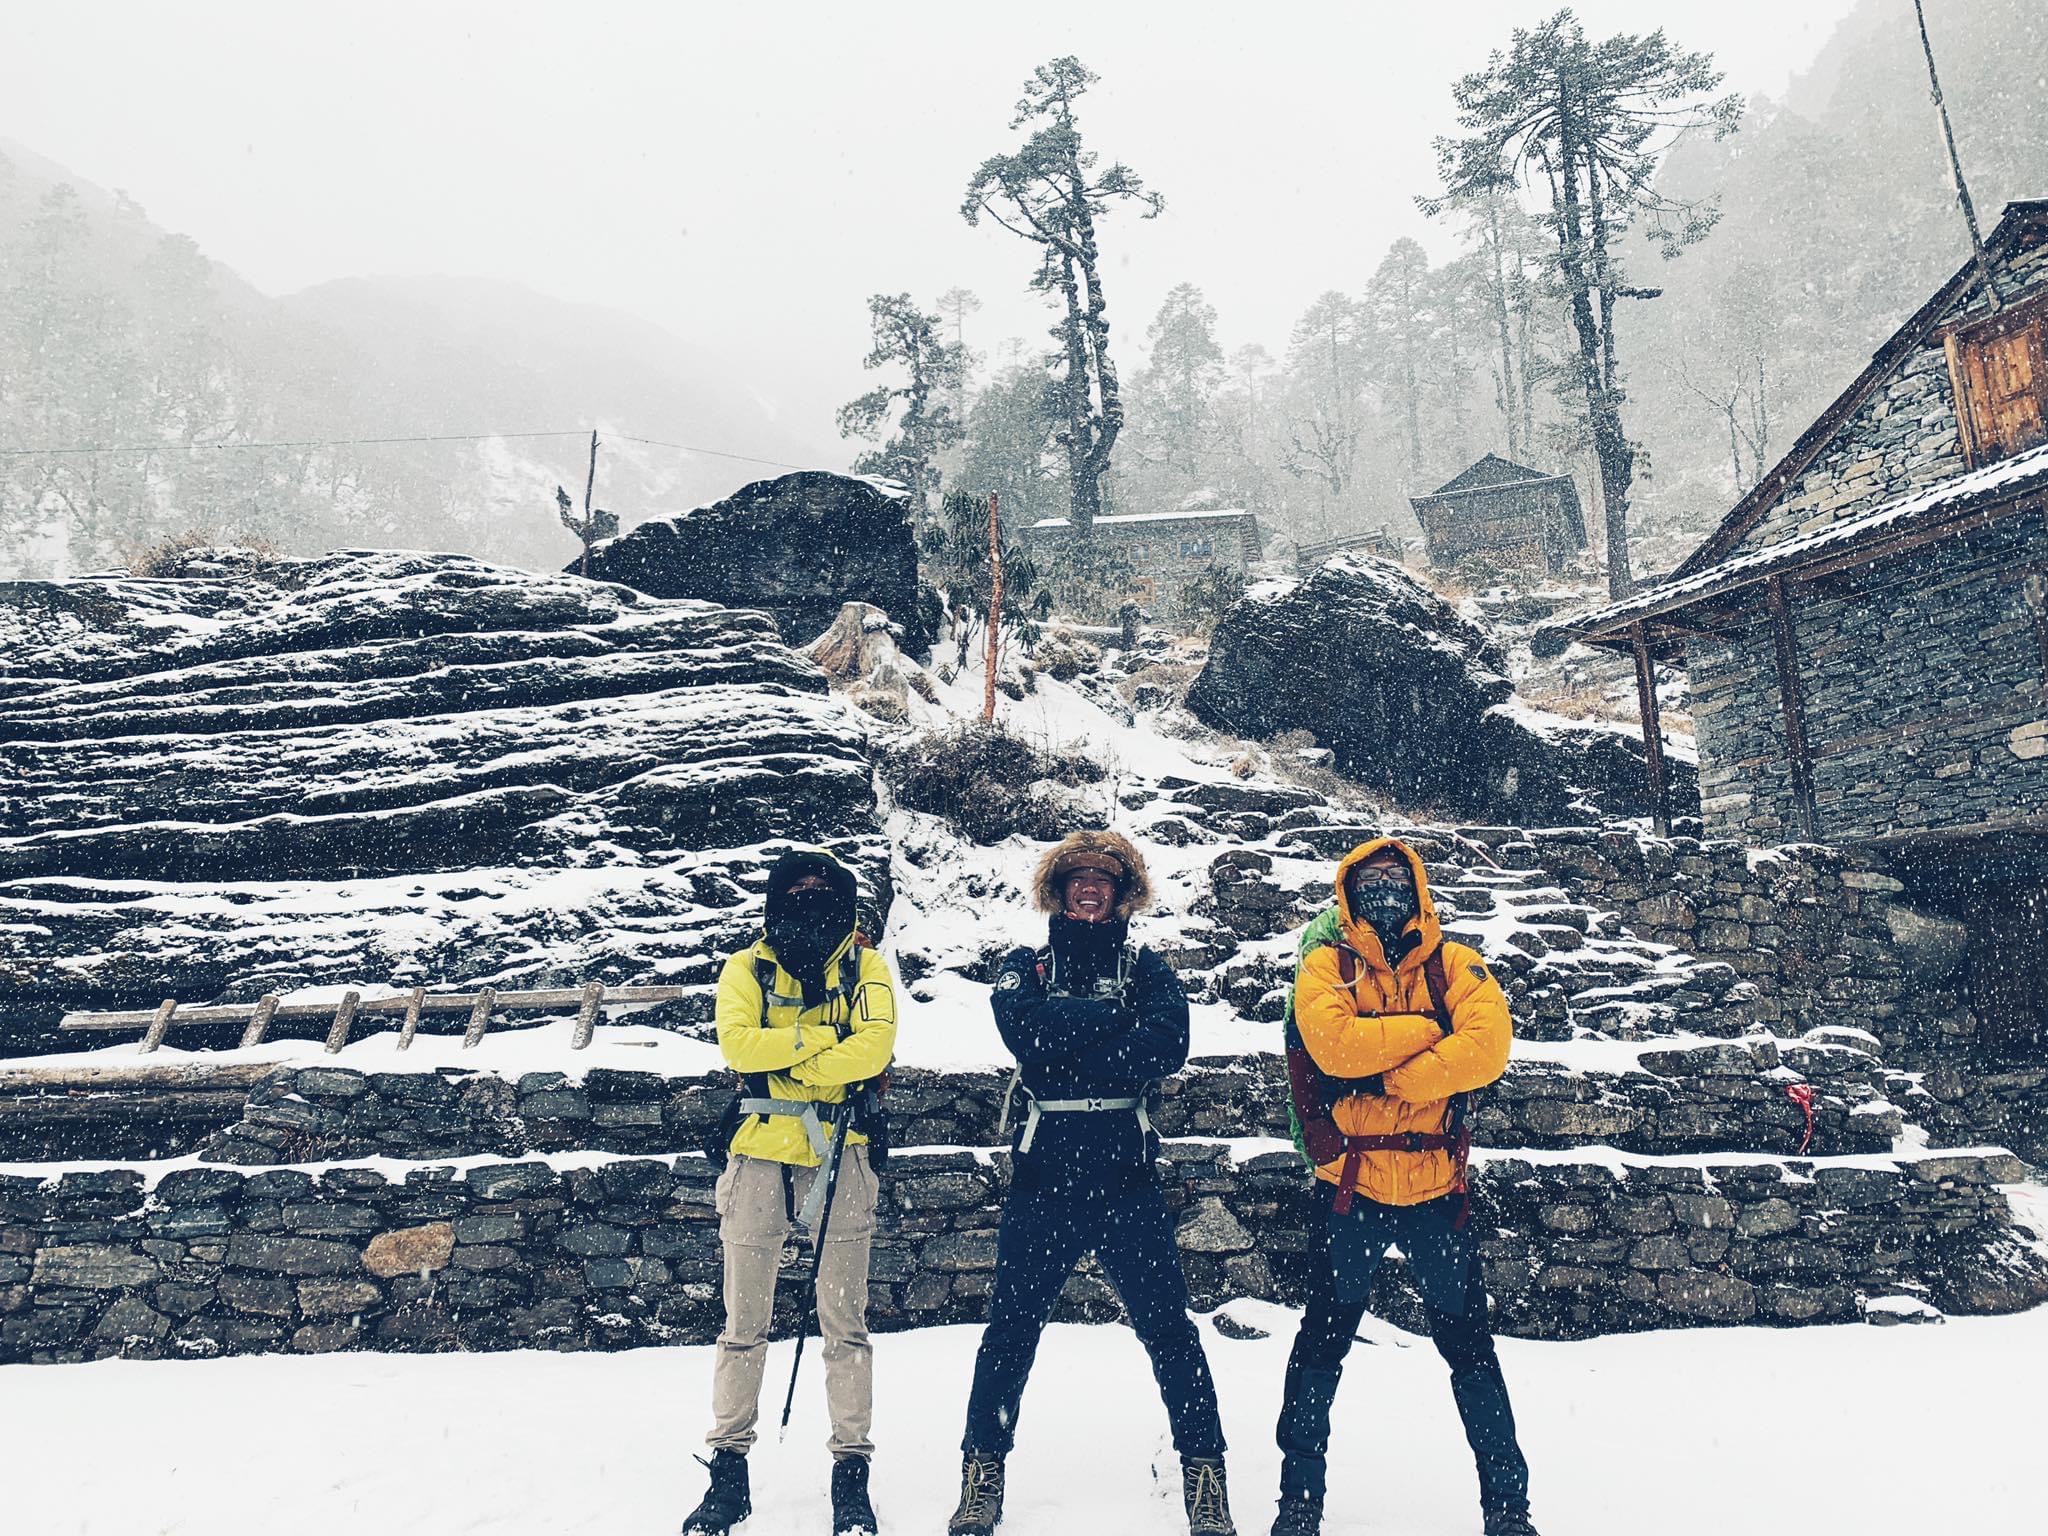 Bella Mai chia sẻ trải nghiệm nhớ đời khi trekking ở ngọn núi cao hơn 6600m tại Nepal